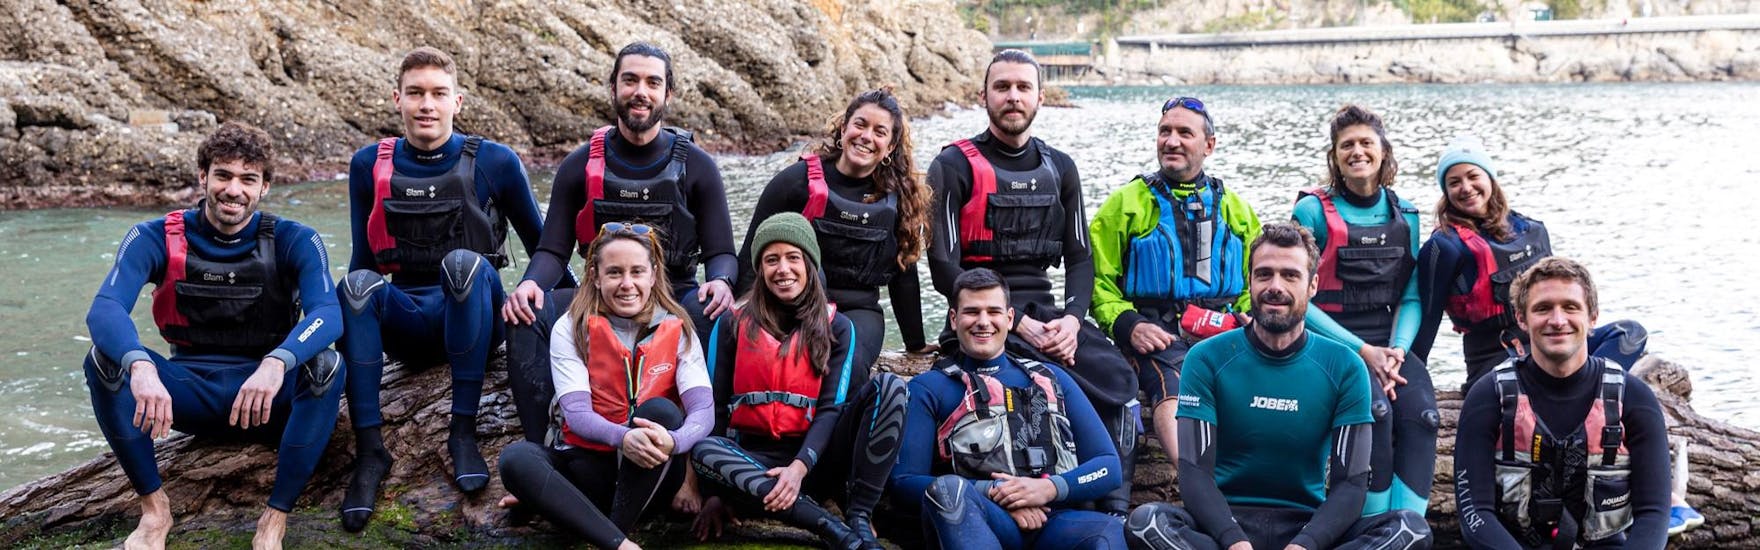 Gli istruttori di Outdoor Portofino sorridono seduti su una roccia.